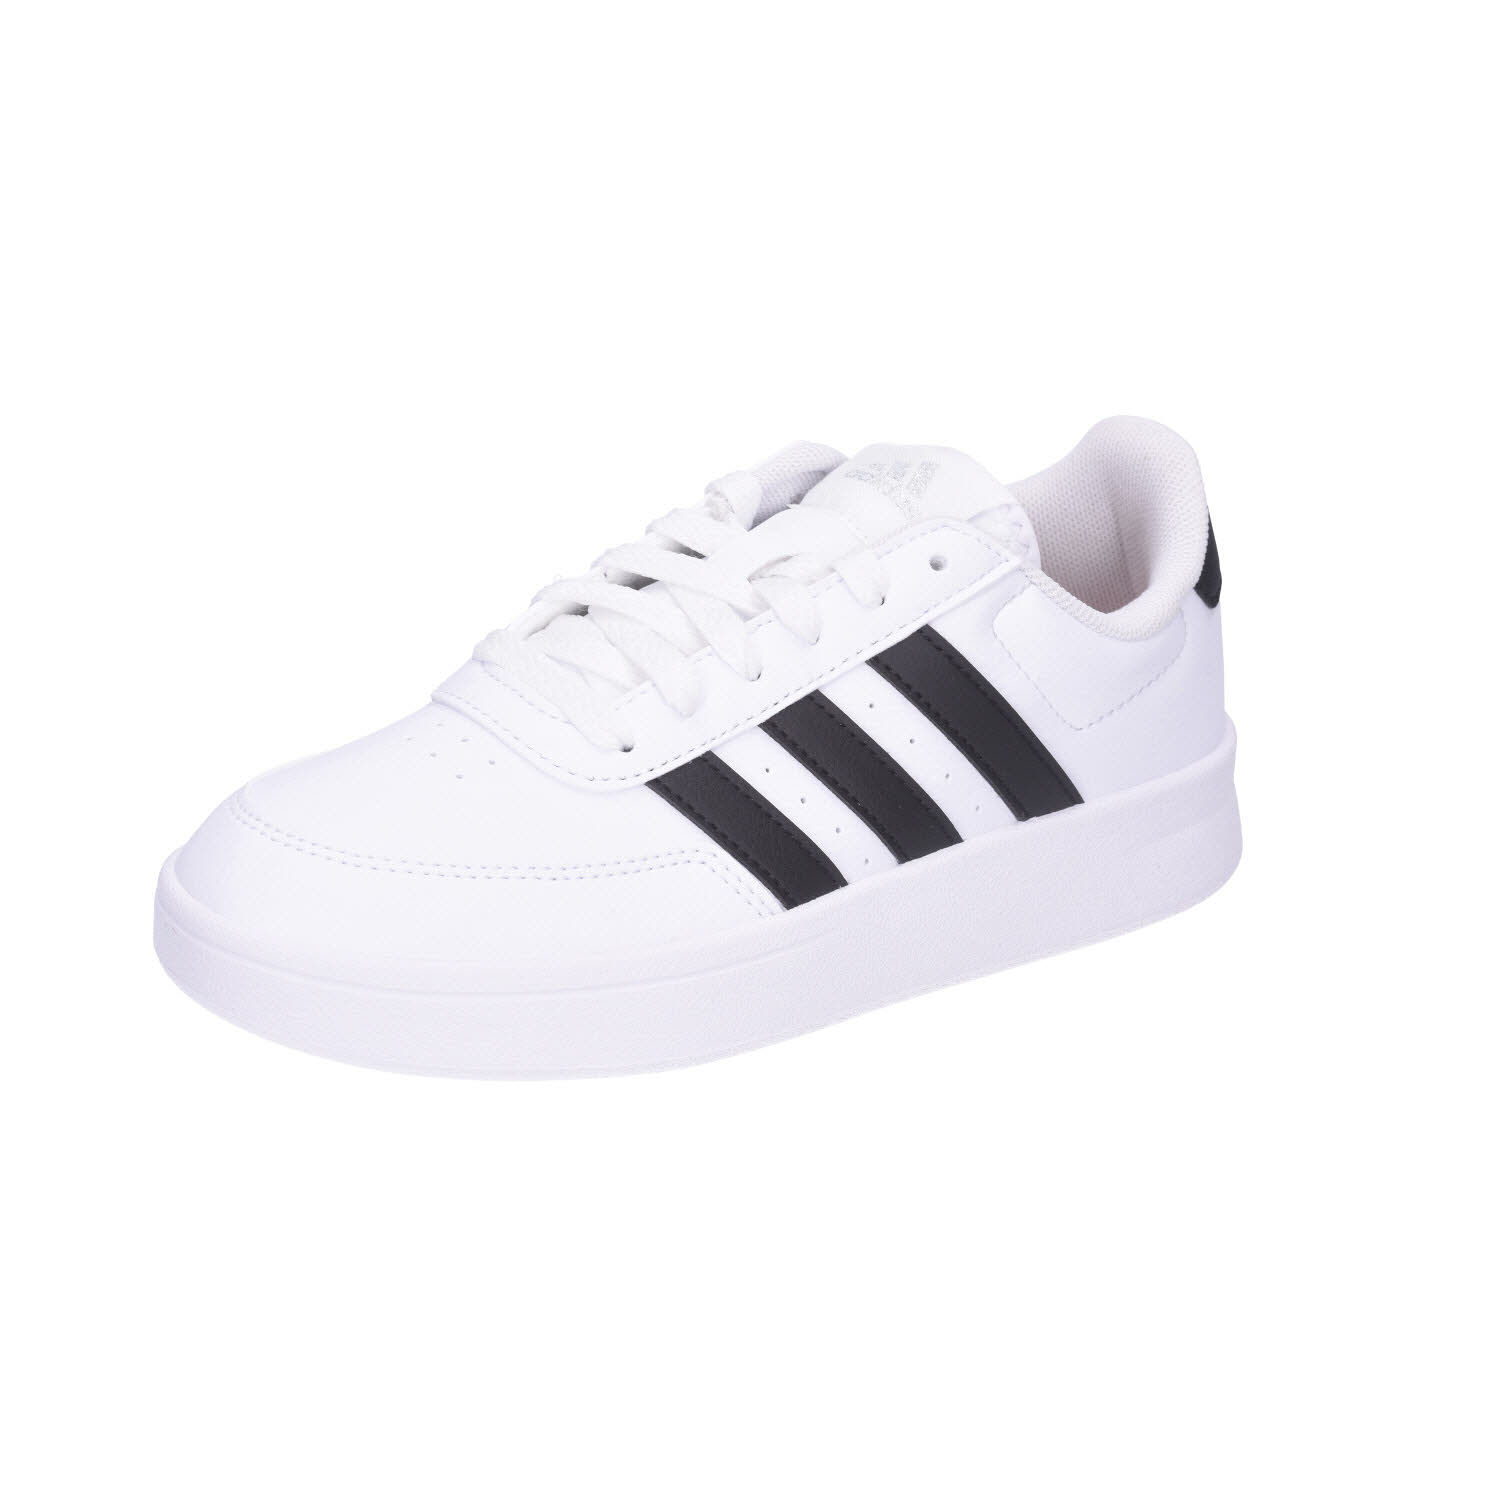 Adidas Breaknet 2.0 White/Black weiß